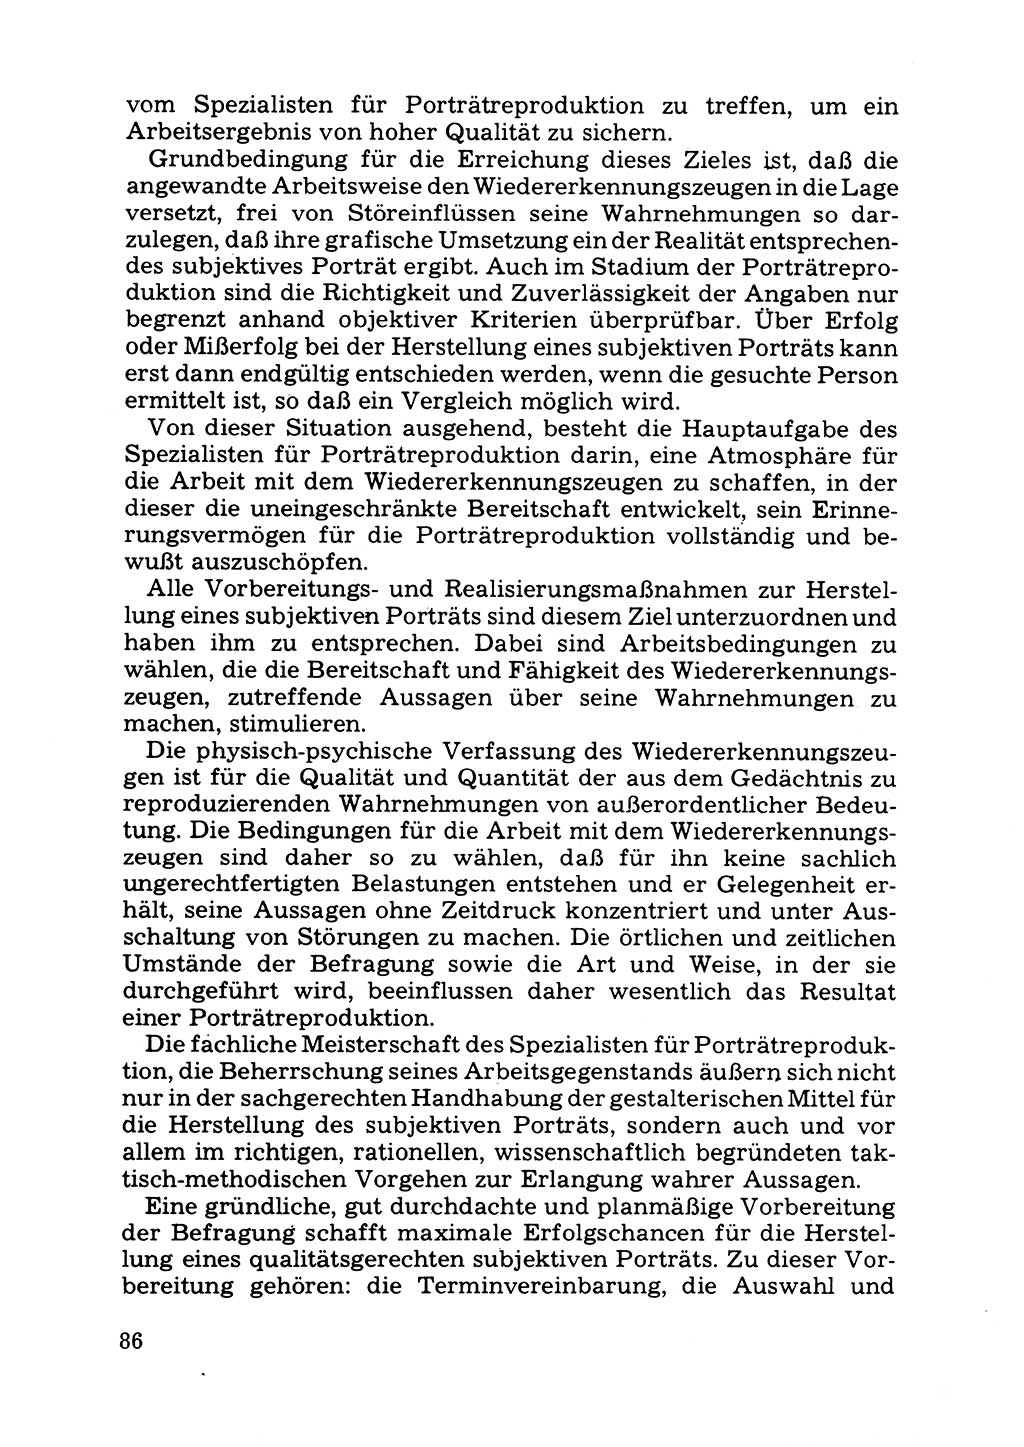 Das subjektive Porträt [Deutsche Demokratische Republik (DDR)] 1981, Seite 86 (Subj. Port. DDR 1981, S. 86)